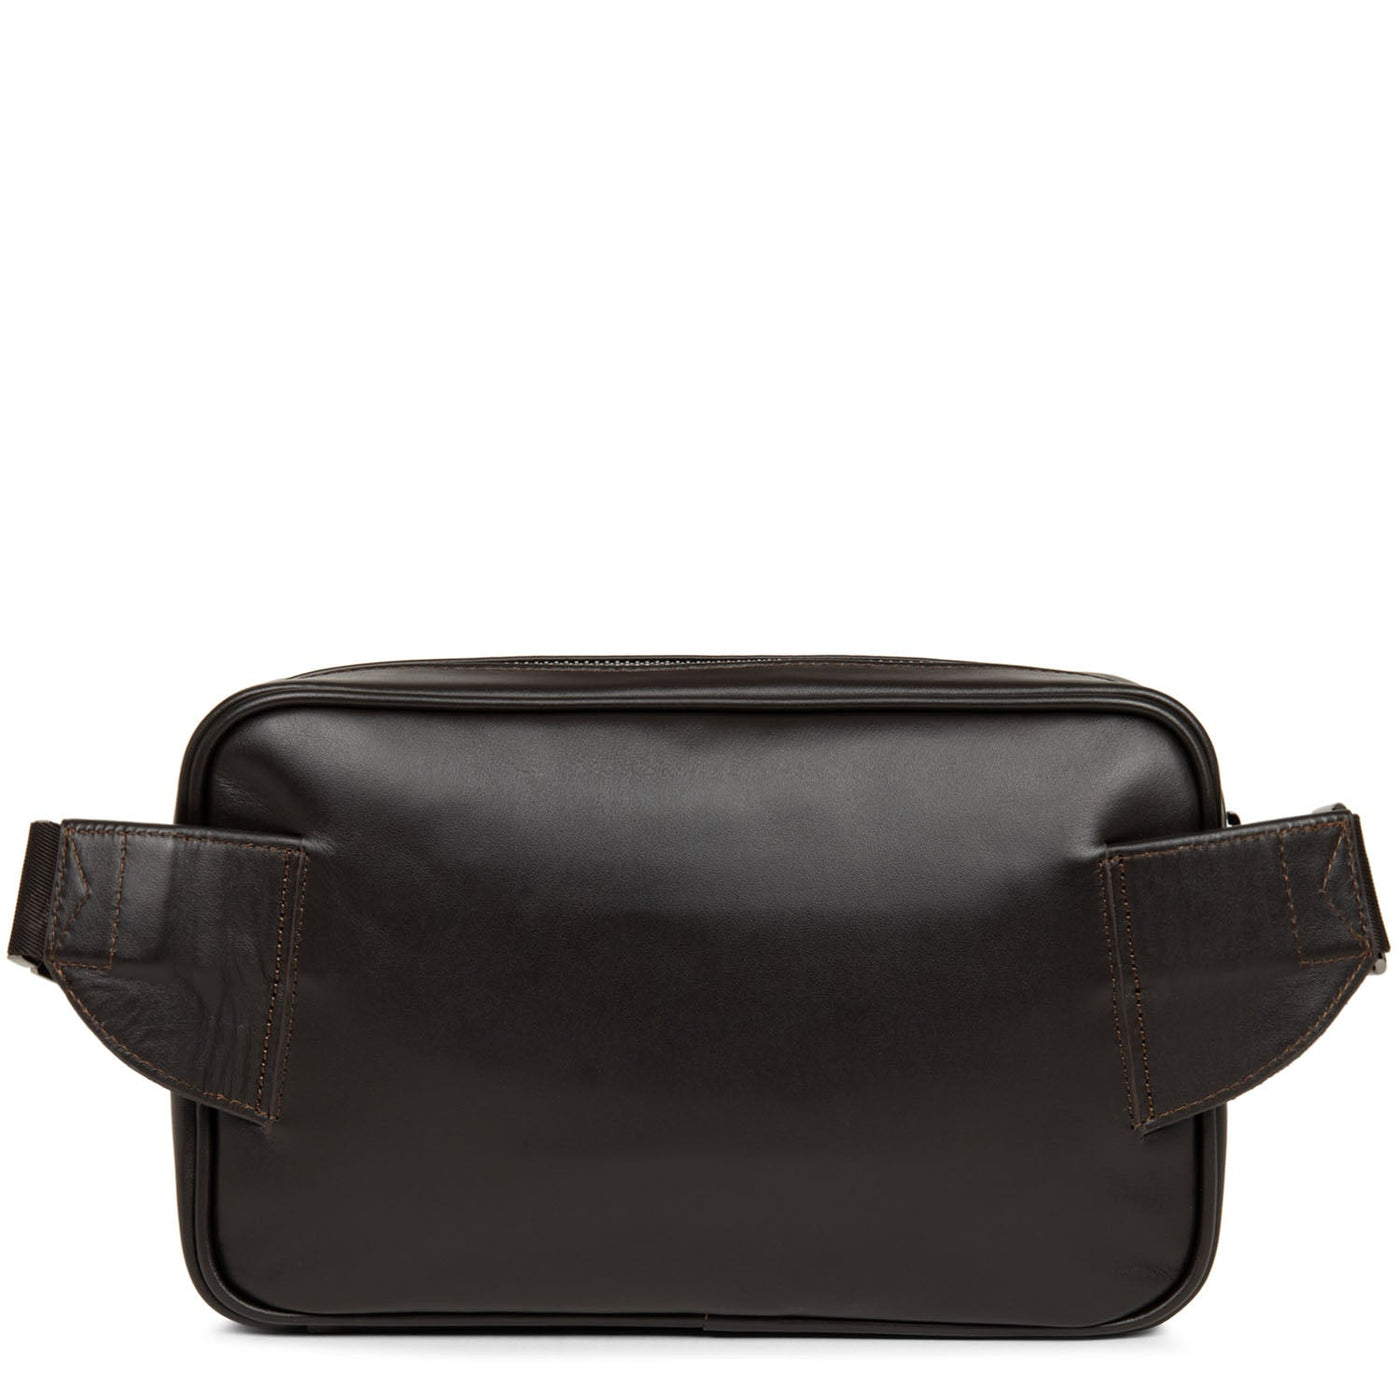 m belt bag - capital #couleur_marron